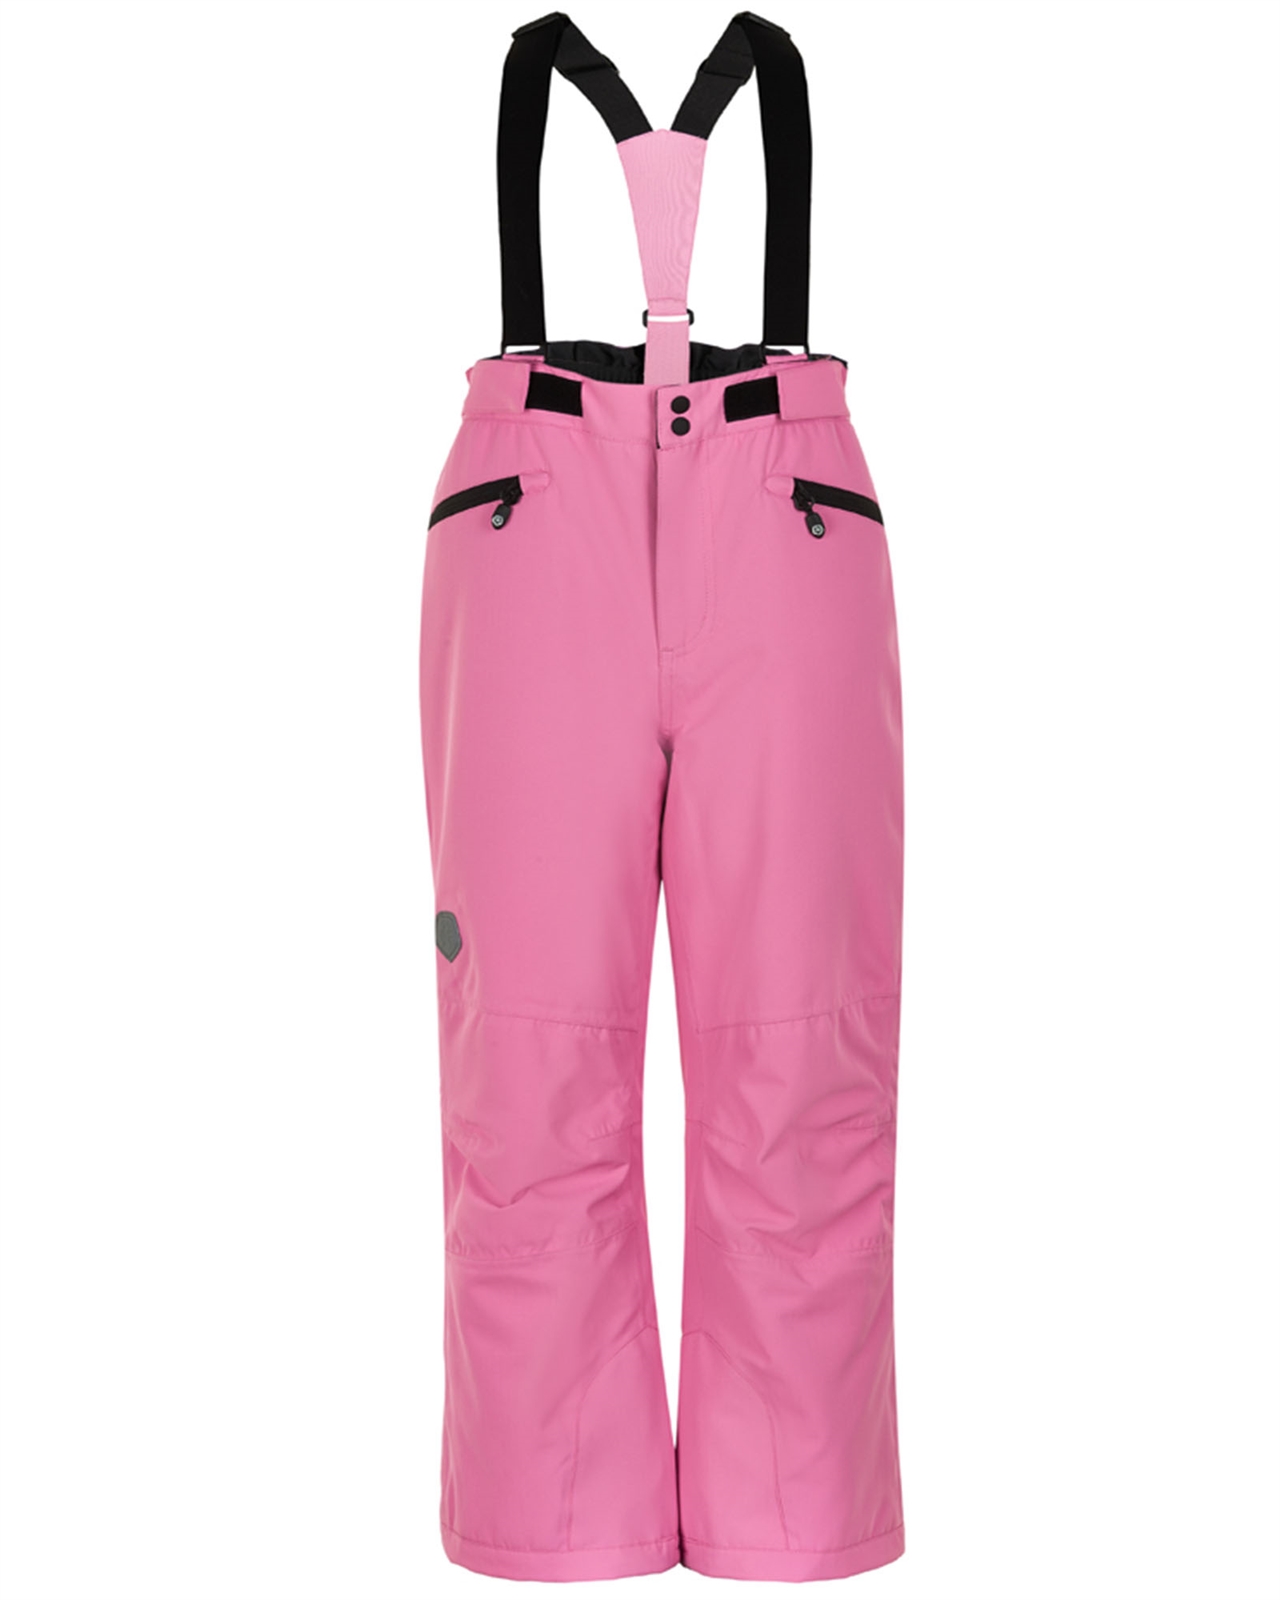 COLOR KIDS Girls' Ski Pants in Pink - Color Kids Snowsuits - Color Kids ...